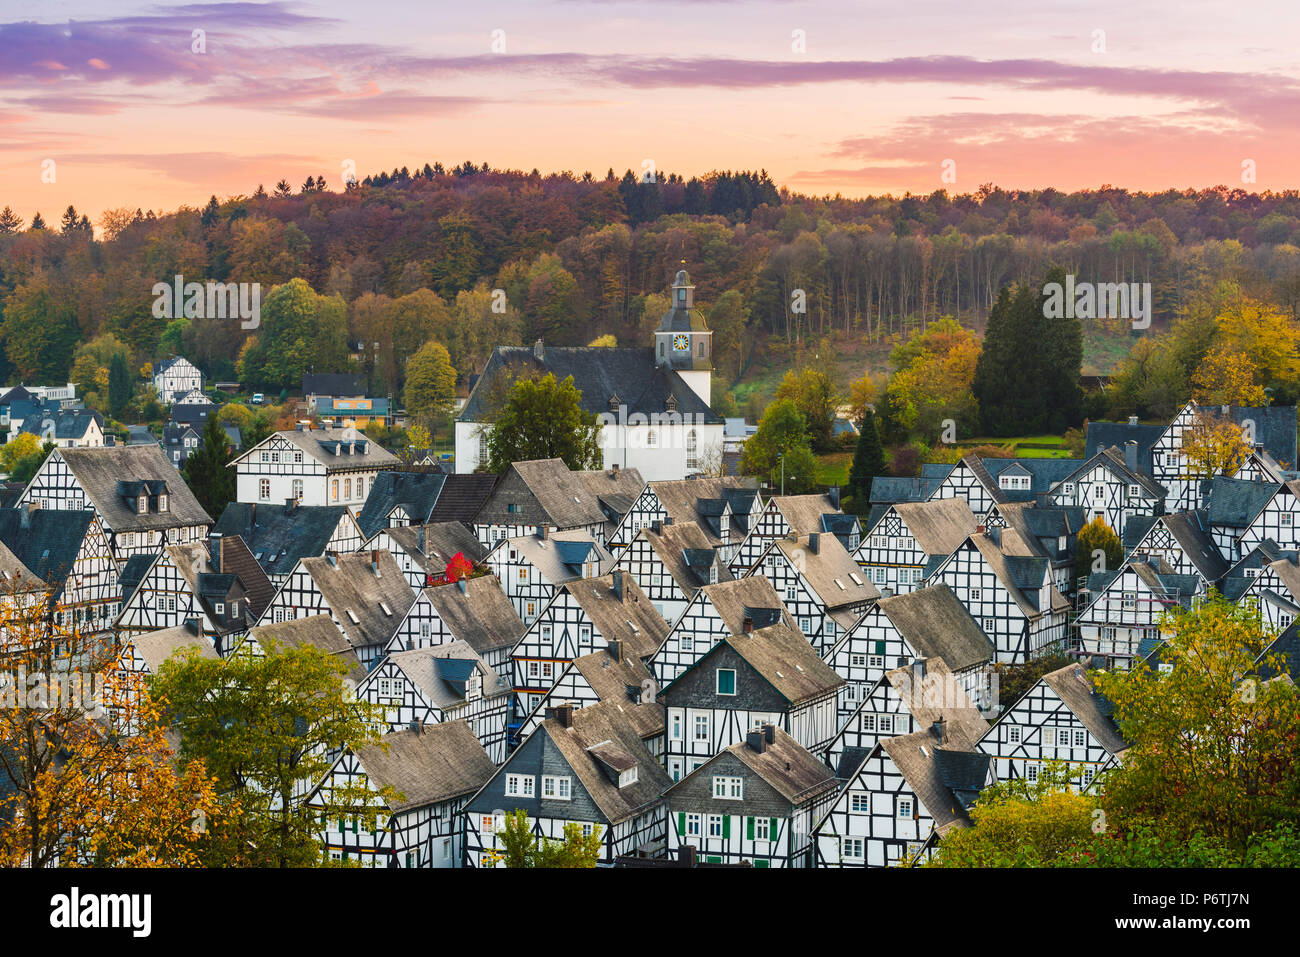 Freudenberg, Siegen-Wittgenstein, Renania del Norte-Westfalia, Alemania. Casas de entramado de madera del típico en el histórico 'Alter' Flecken Old Town. Foto de stock